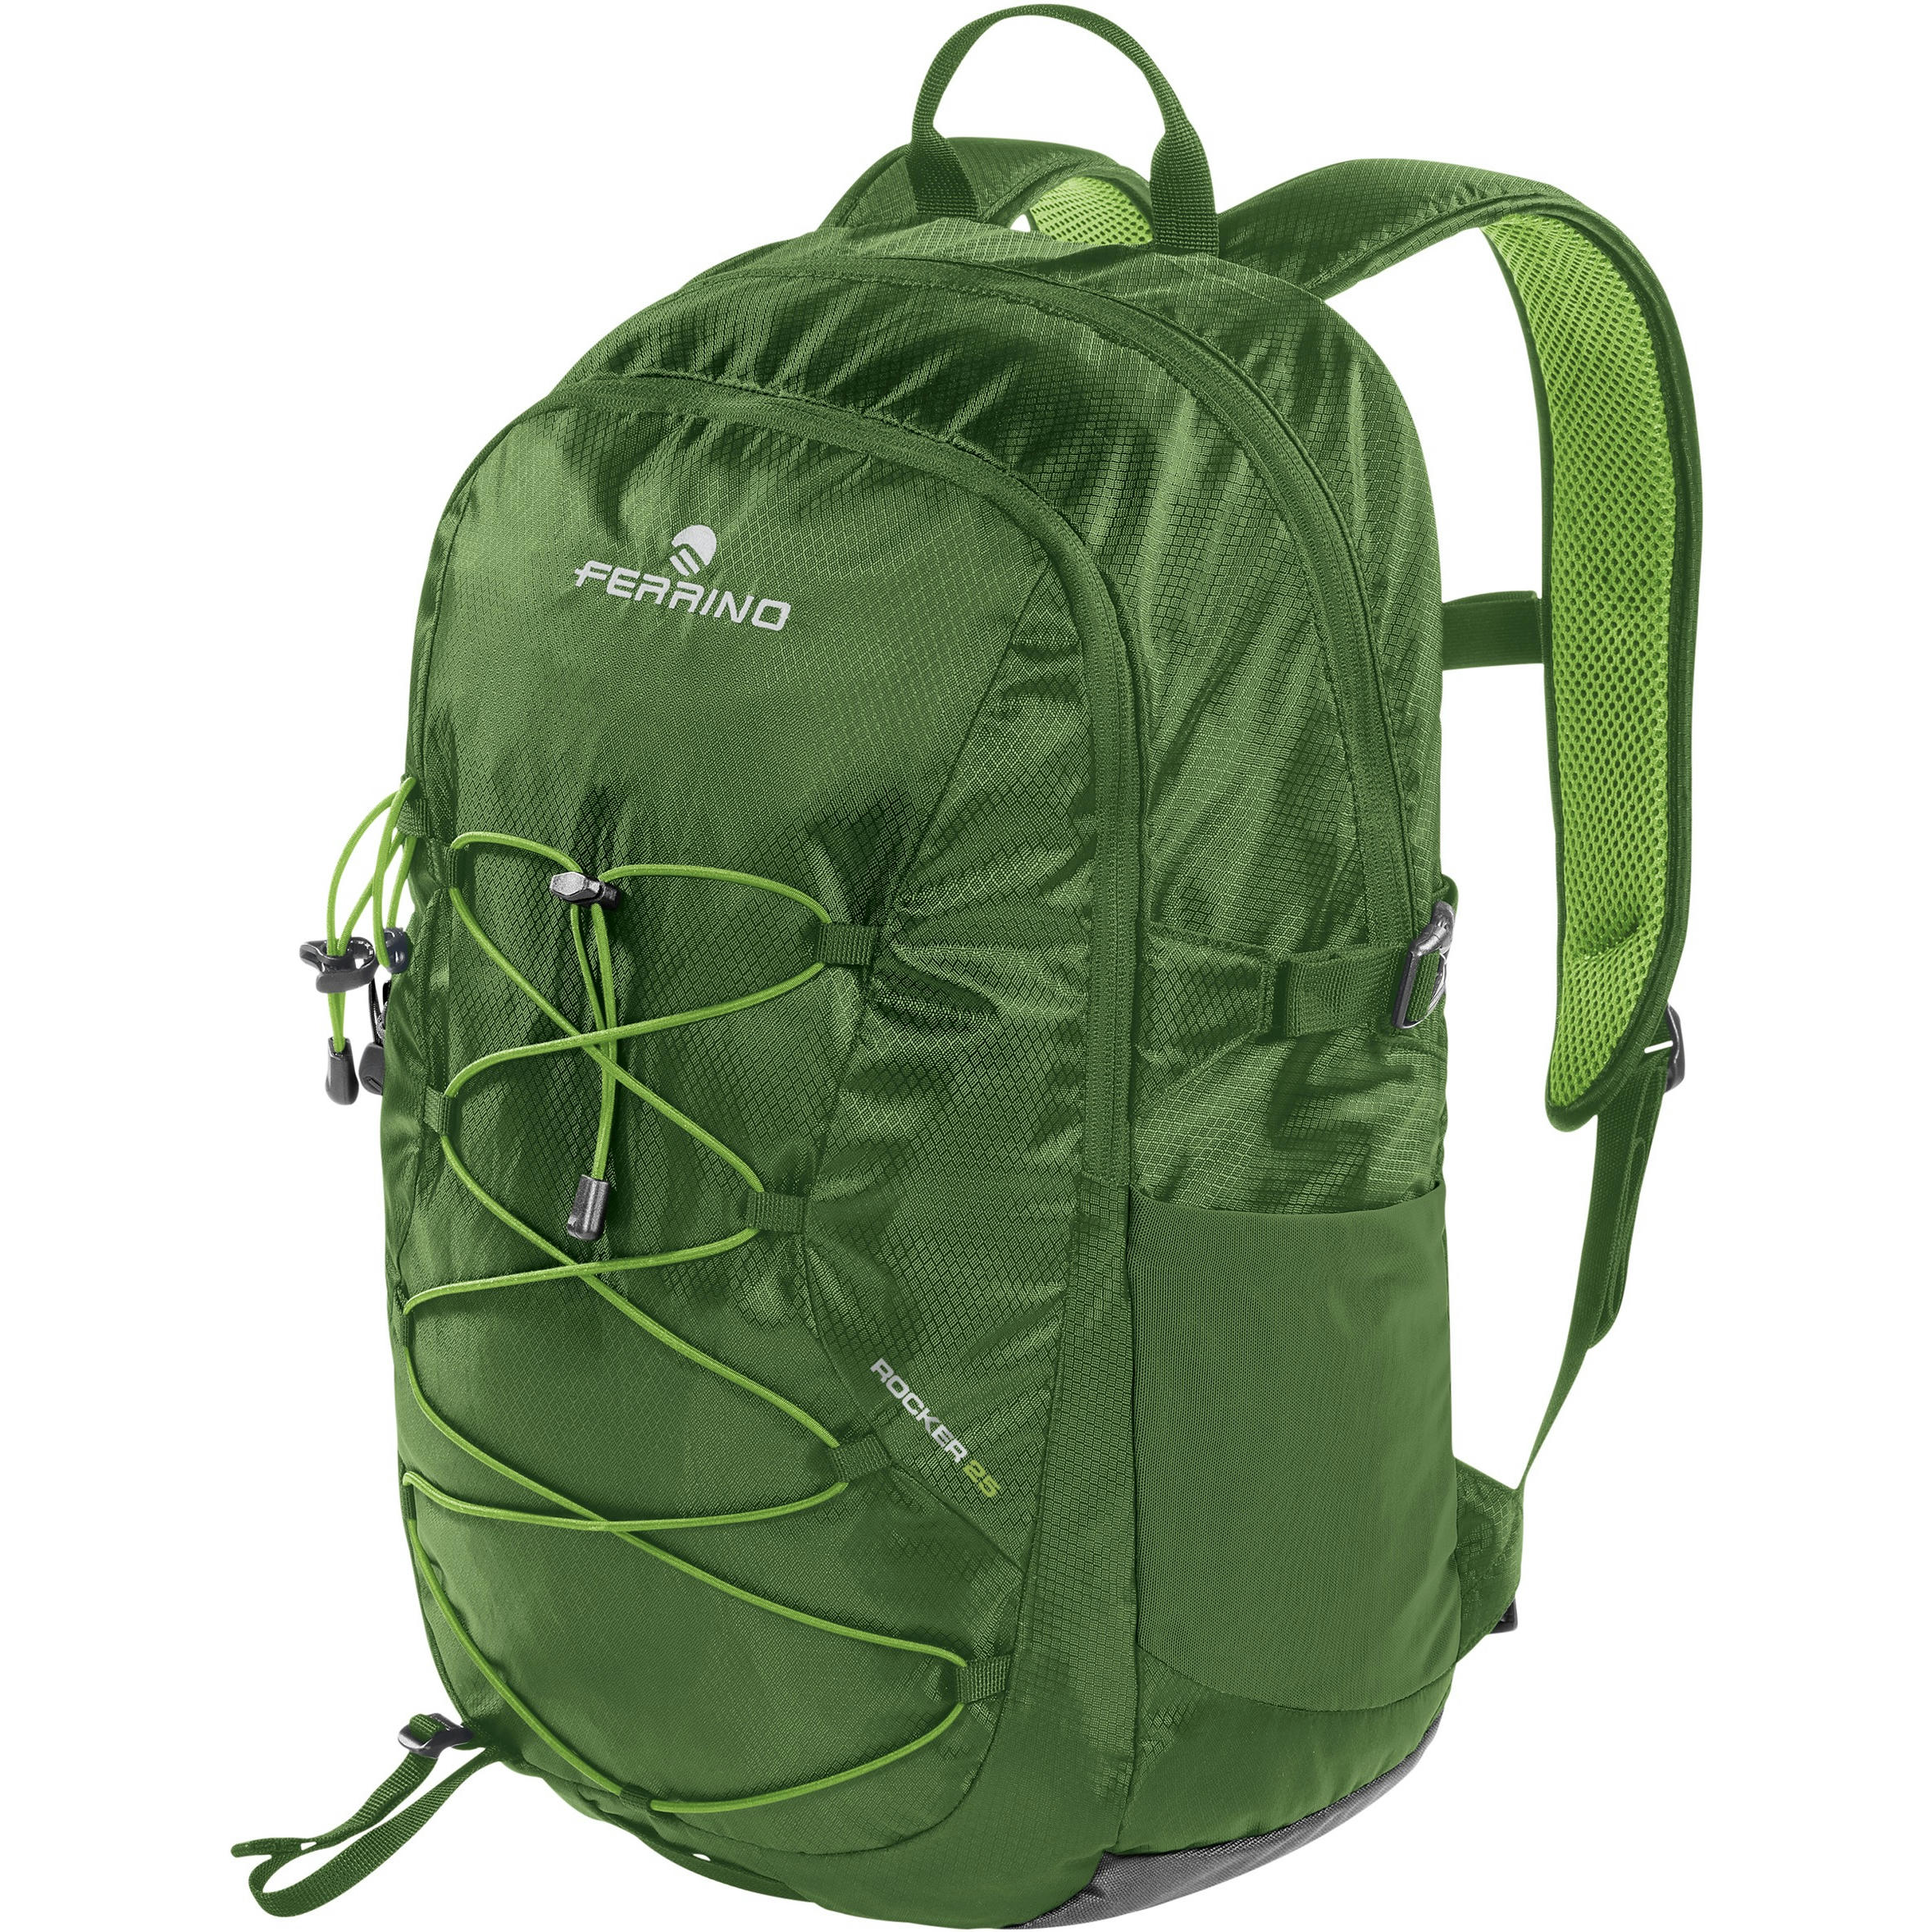 Міський рюкзак Ferrino Backpack Rocker 25L Green (75806IVV)фото1